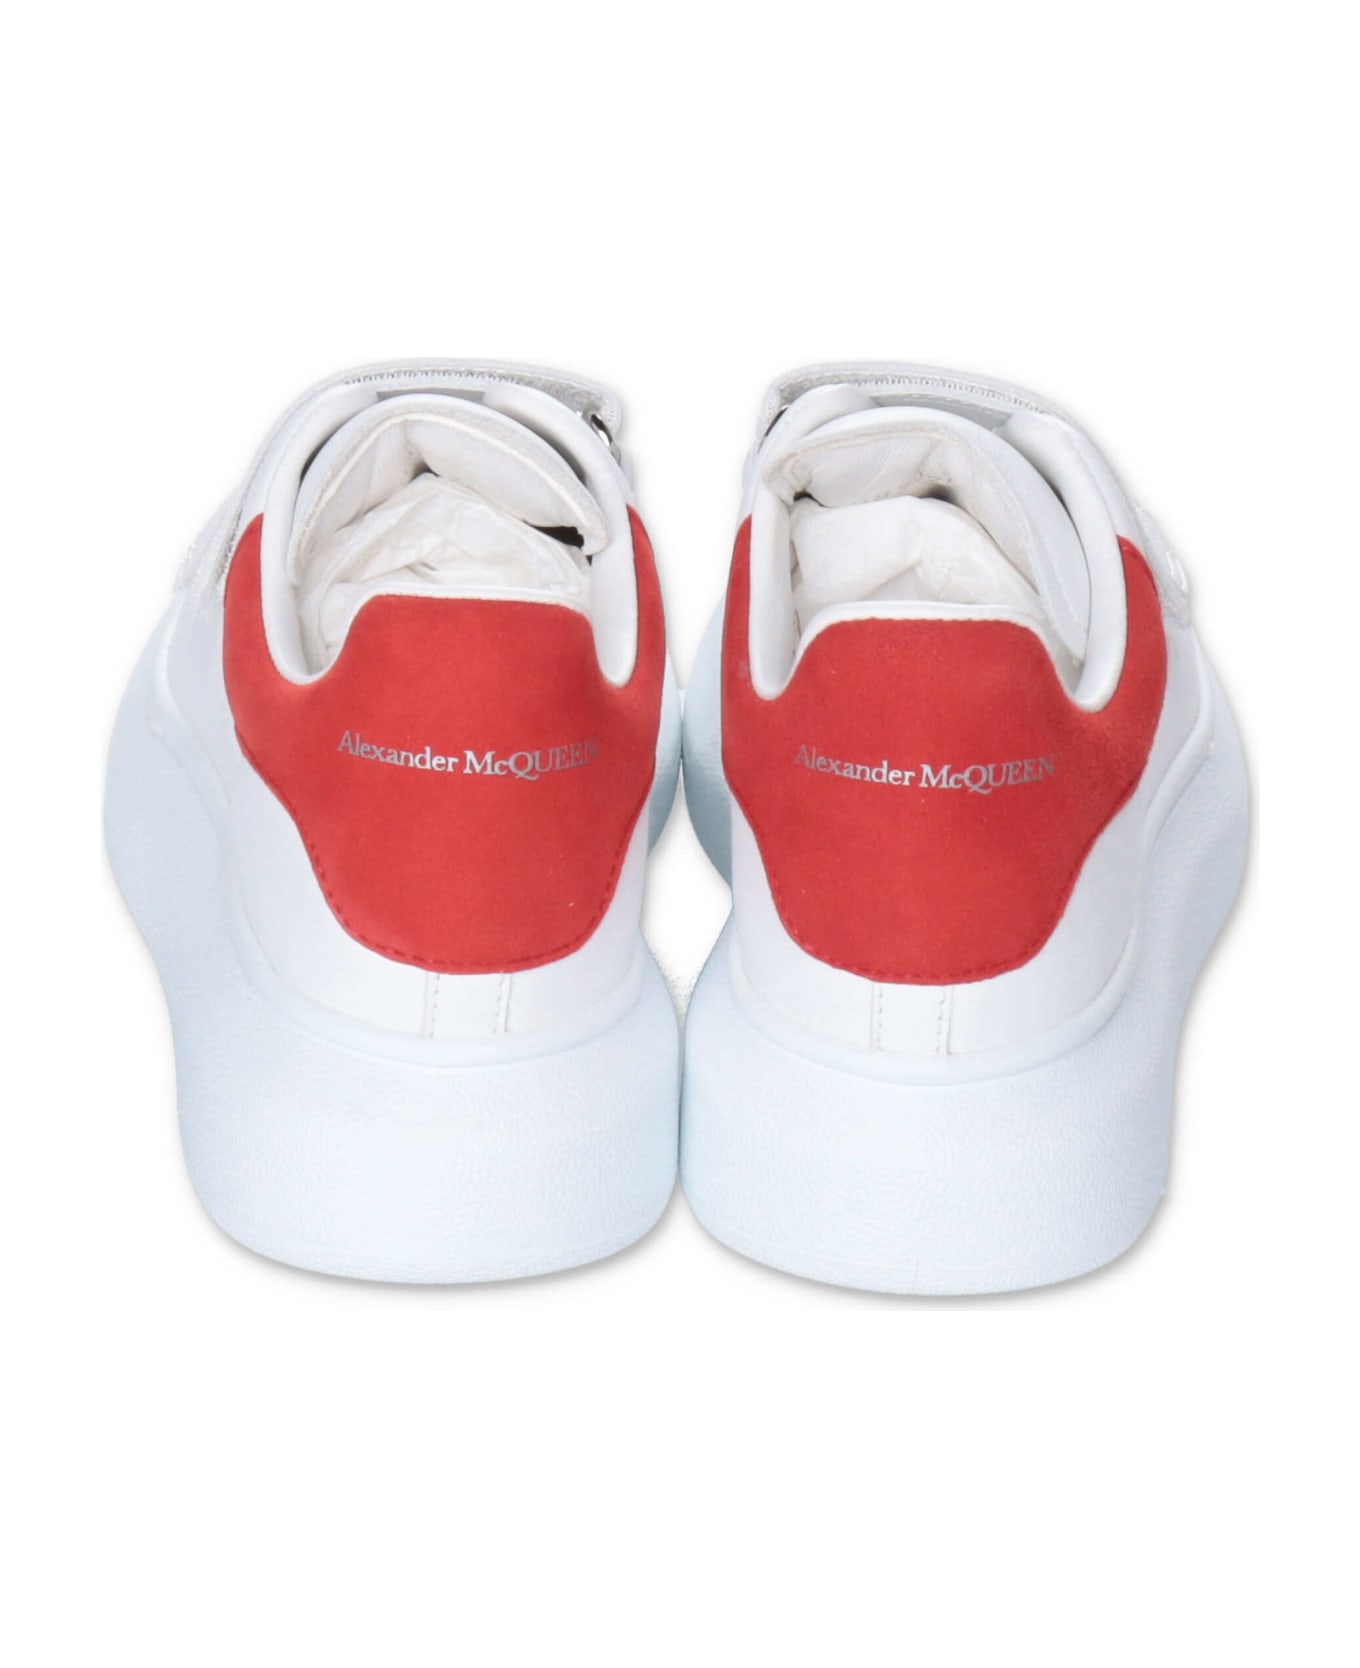 Alexander McQueen Sneakers Bianche In Pelle Con Velcro - Bianco